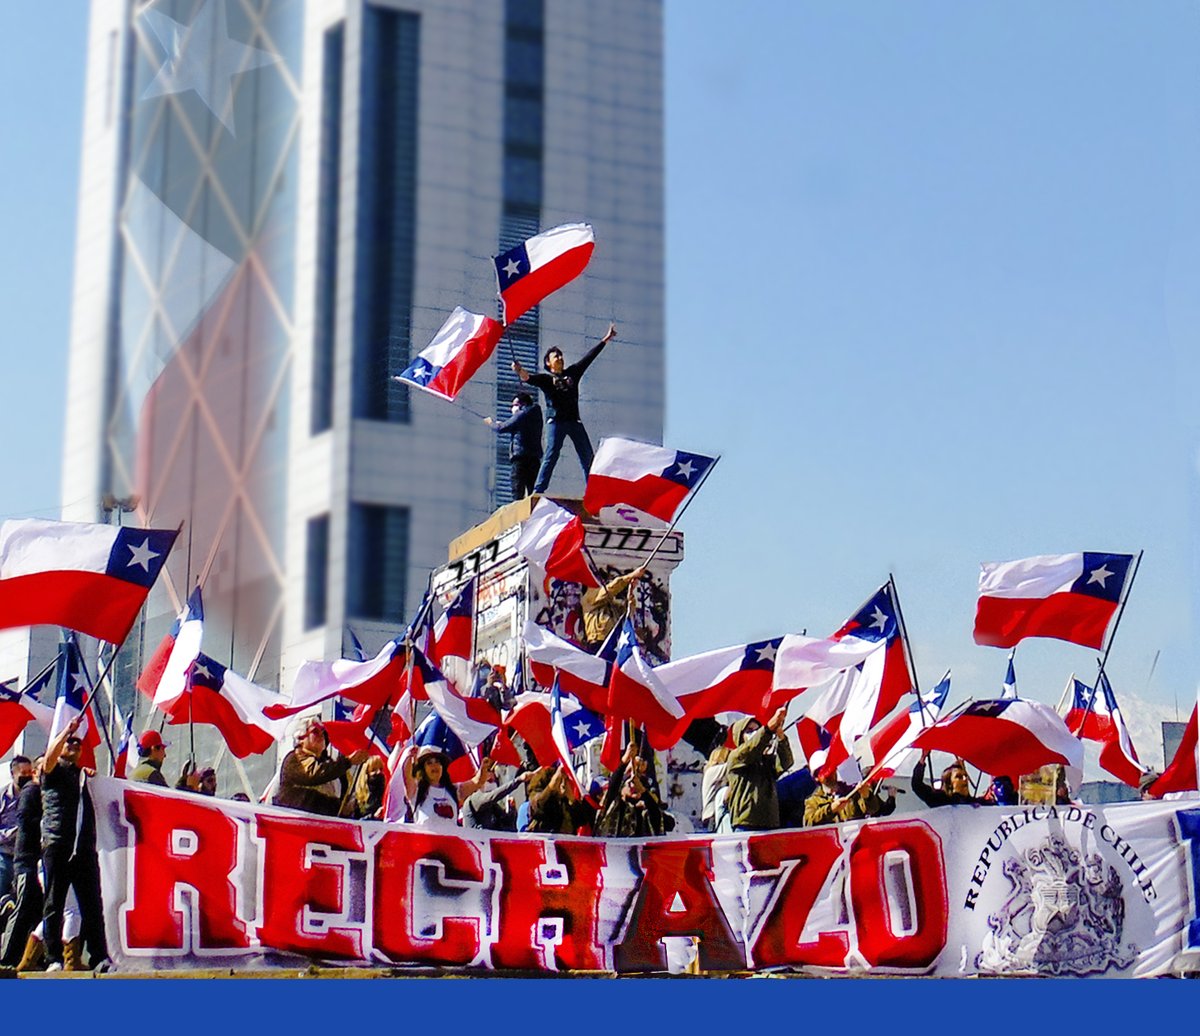 @JavierHAVuelto @JavierHAVuelto 1. Francisco Muñoz con un megafono y una bandera los tiene locos  2.El Team Patriota esta formado por Patriotas, en simple, la hacemos Gratis y por la Patria. 3. El Canal The Real Patriots el mas escuhado de Chile es lo mismo XX y XY trabajan gratis. Somos mill.